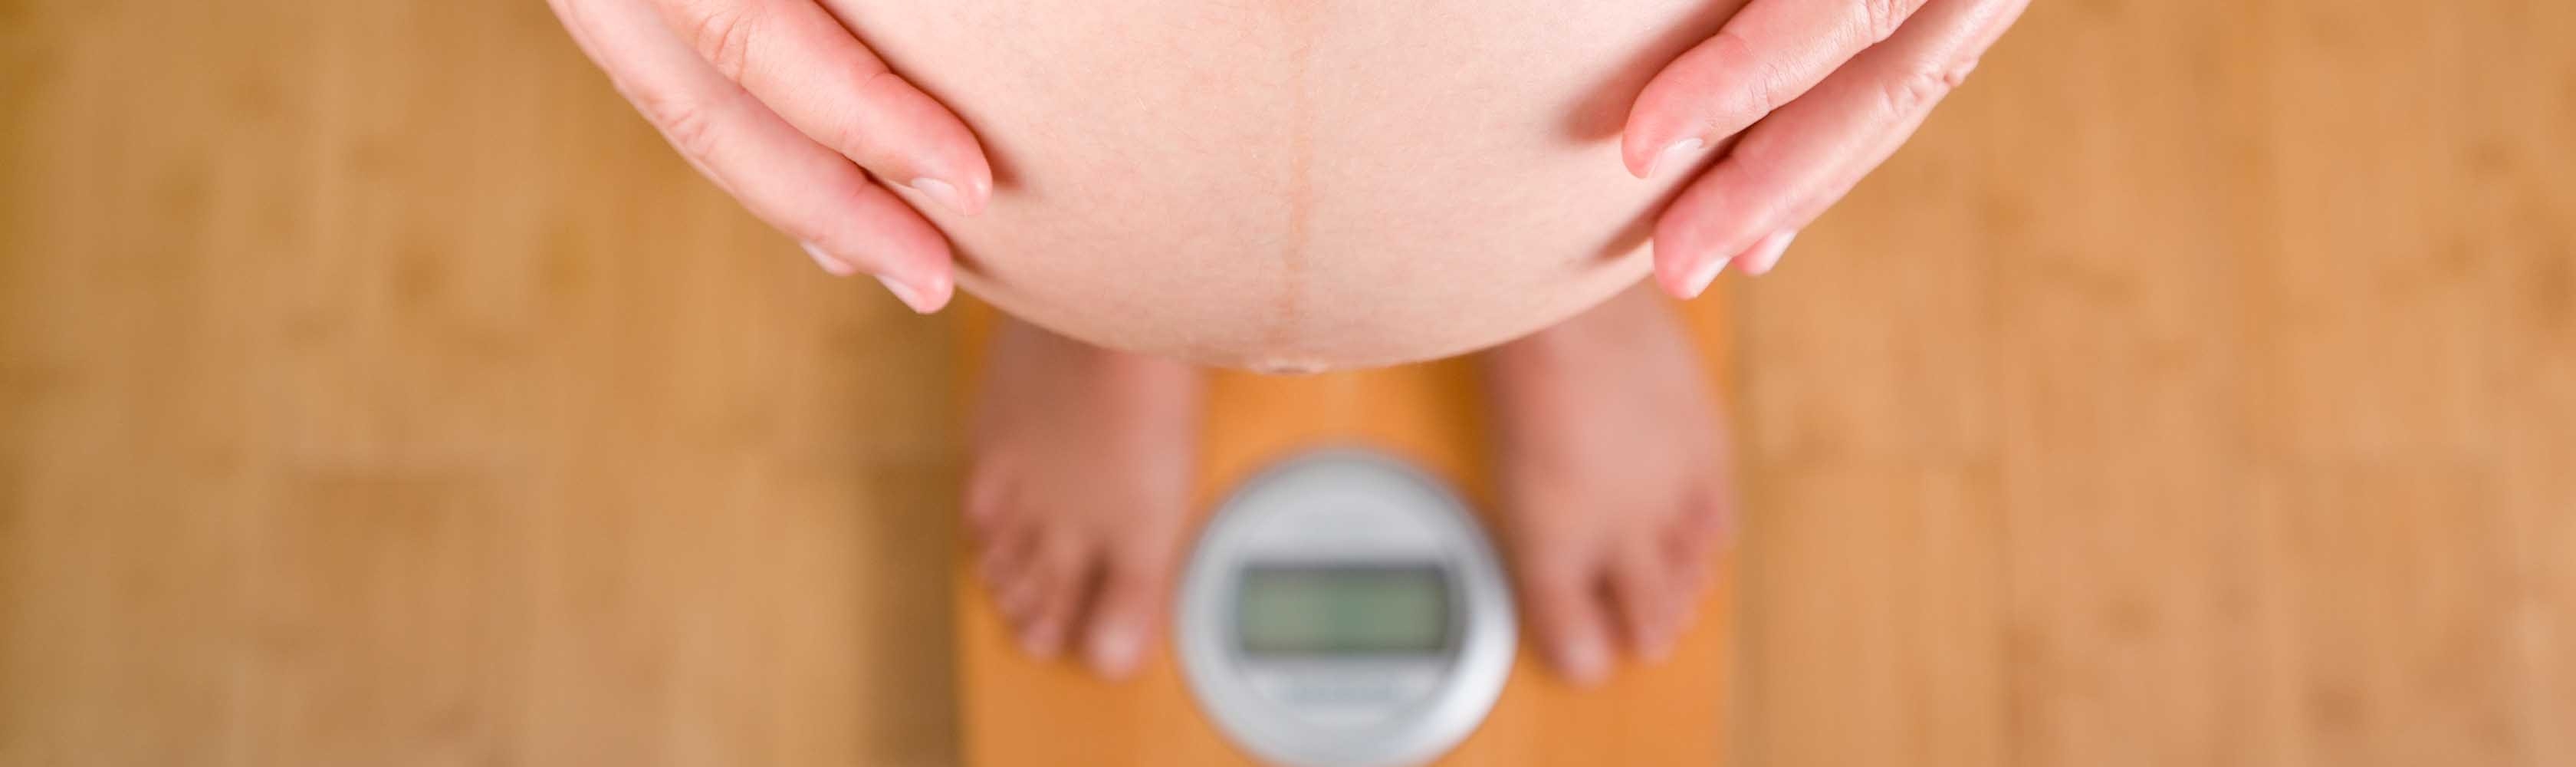 Gewichtszunahme in der Schwangerschaft – Frau misst Ihren Bauchumfang.